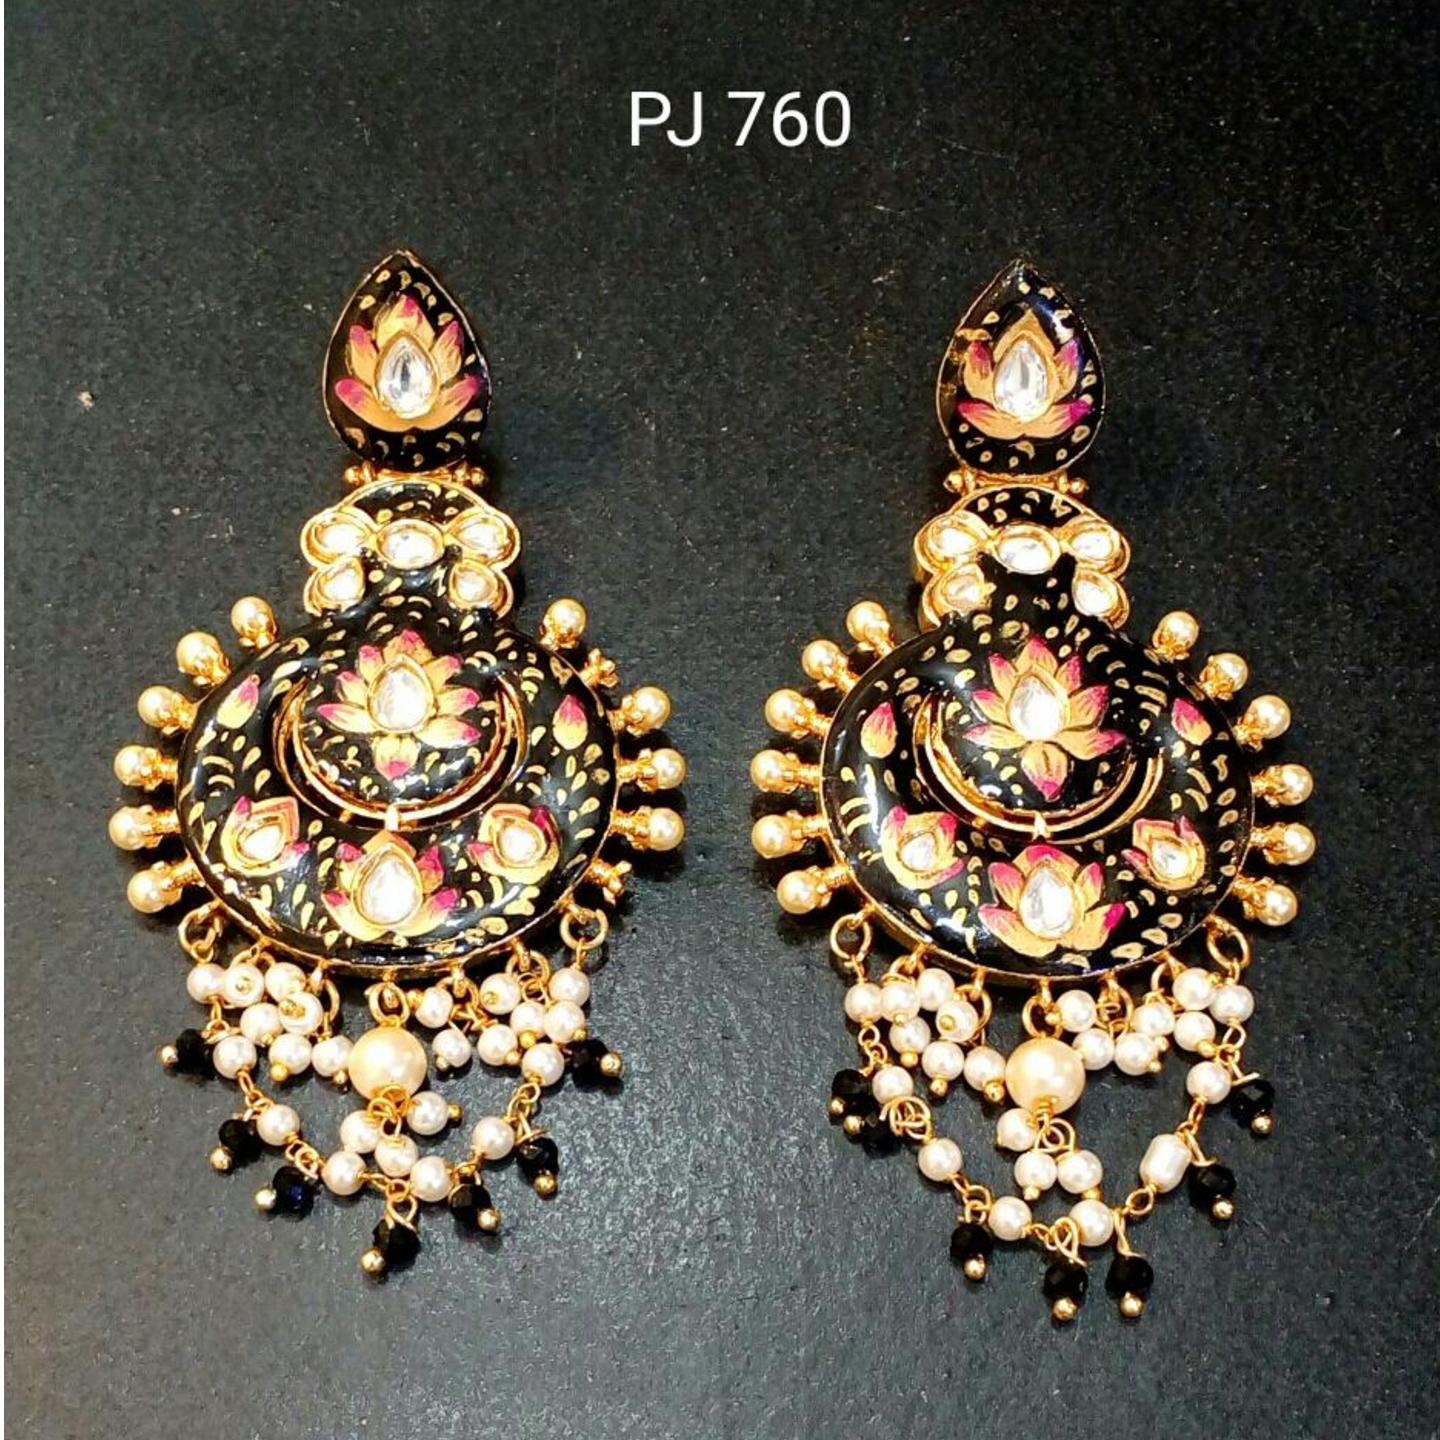 Kundan Meena Hand Painted Earrings with Pearl Drops